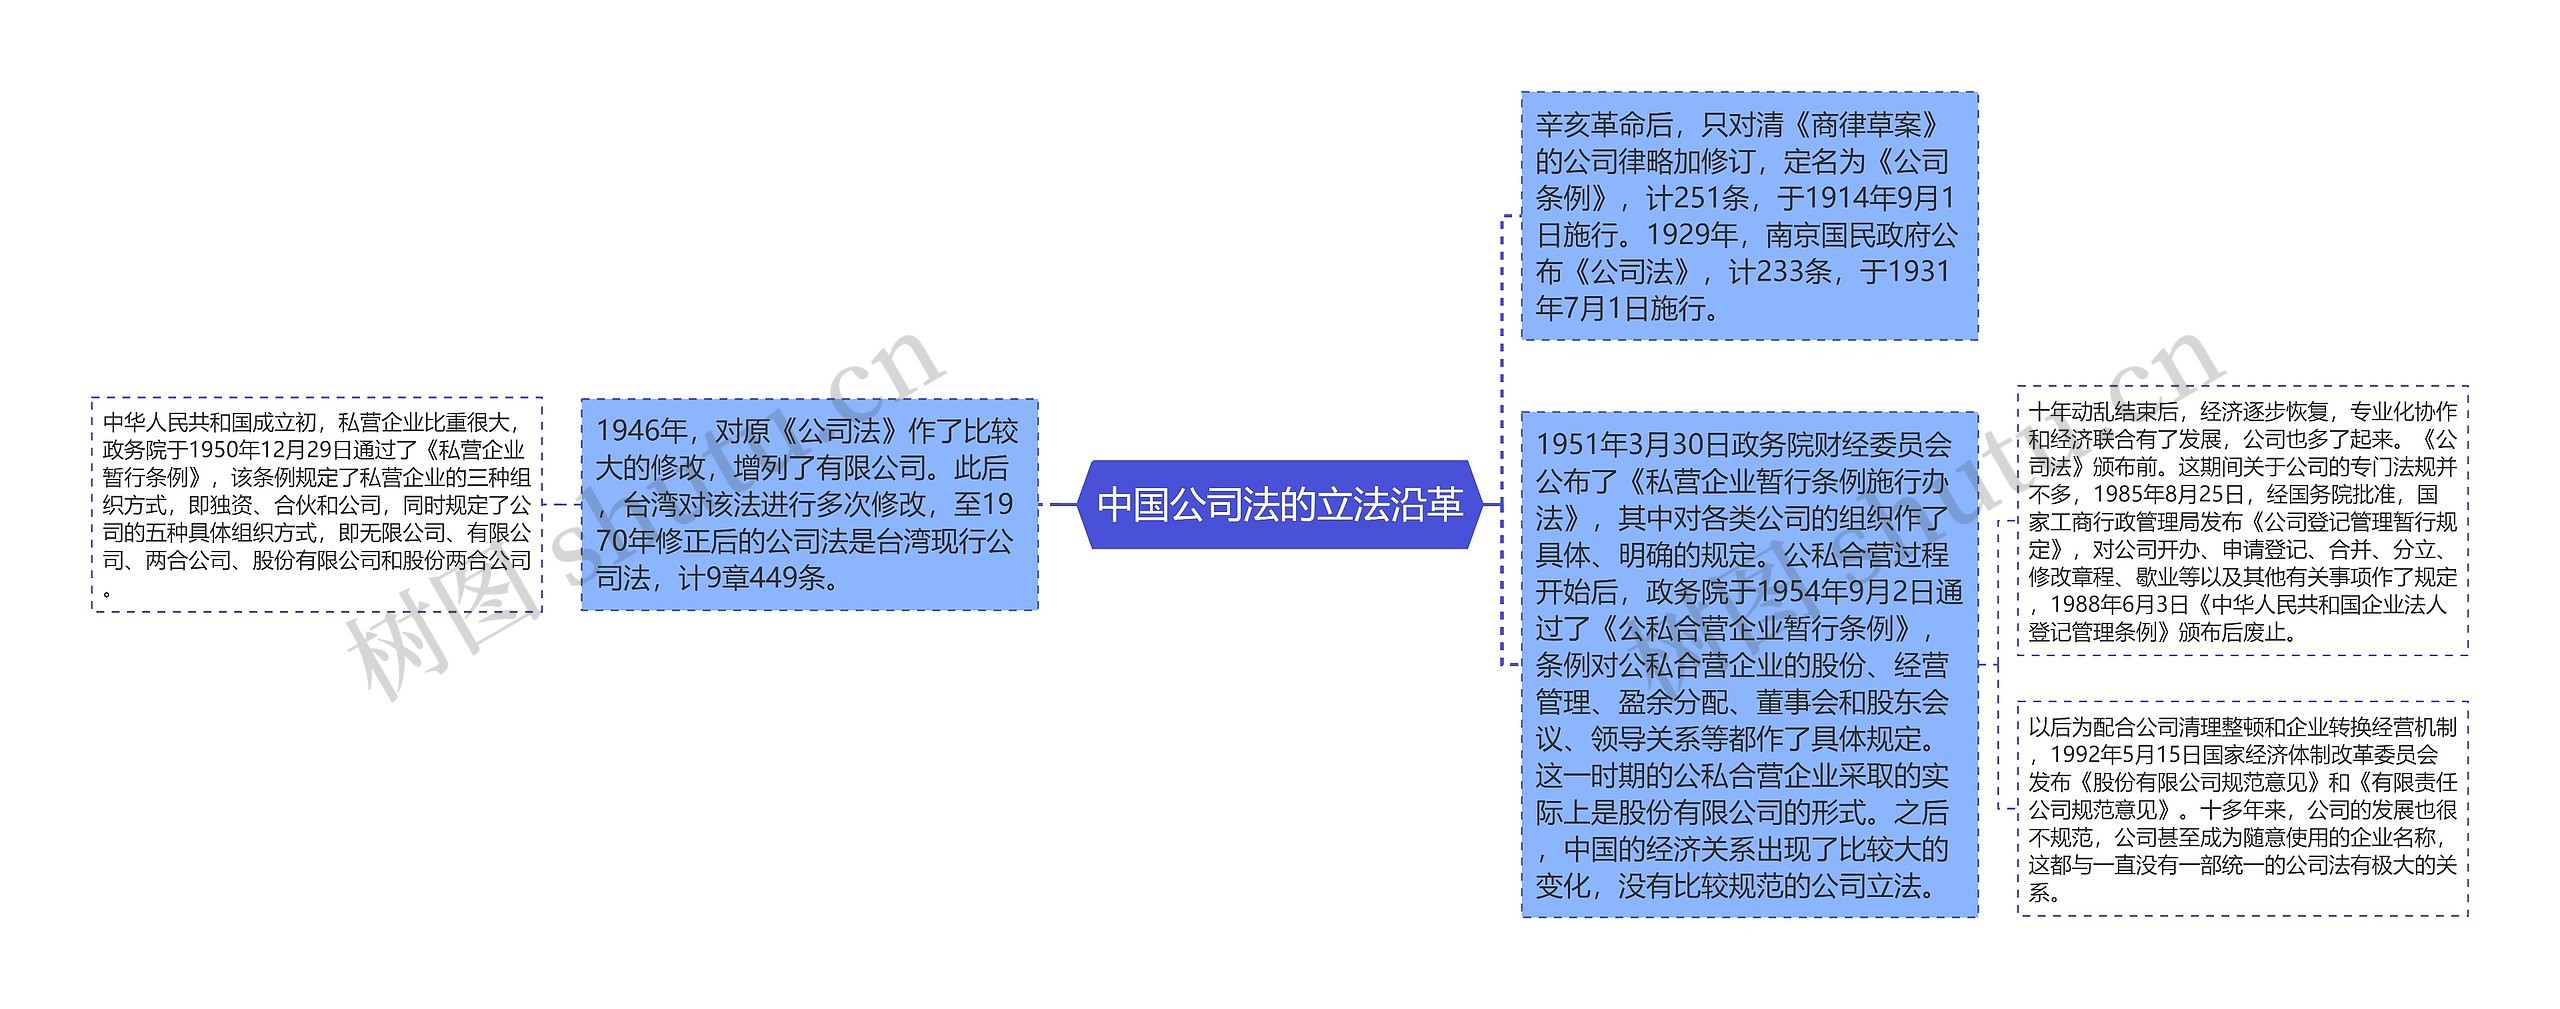 中国公司法的立法沿革思维导图